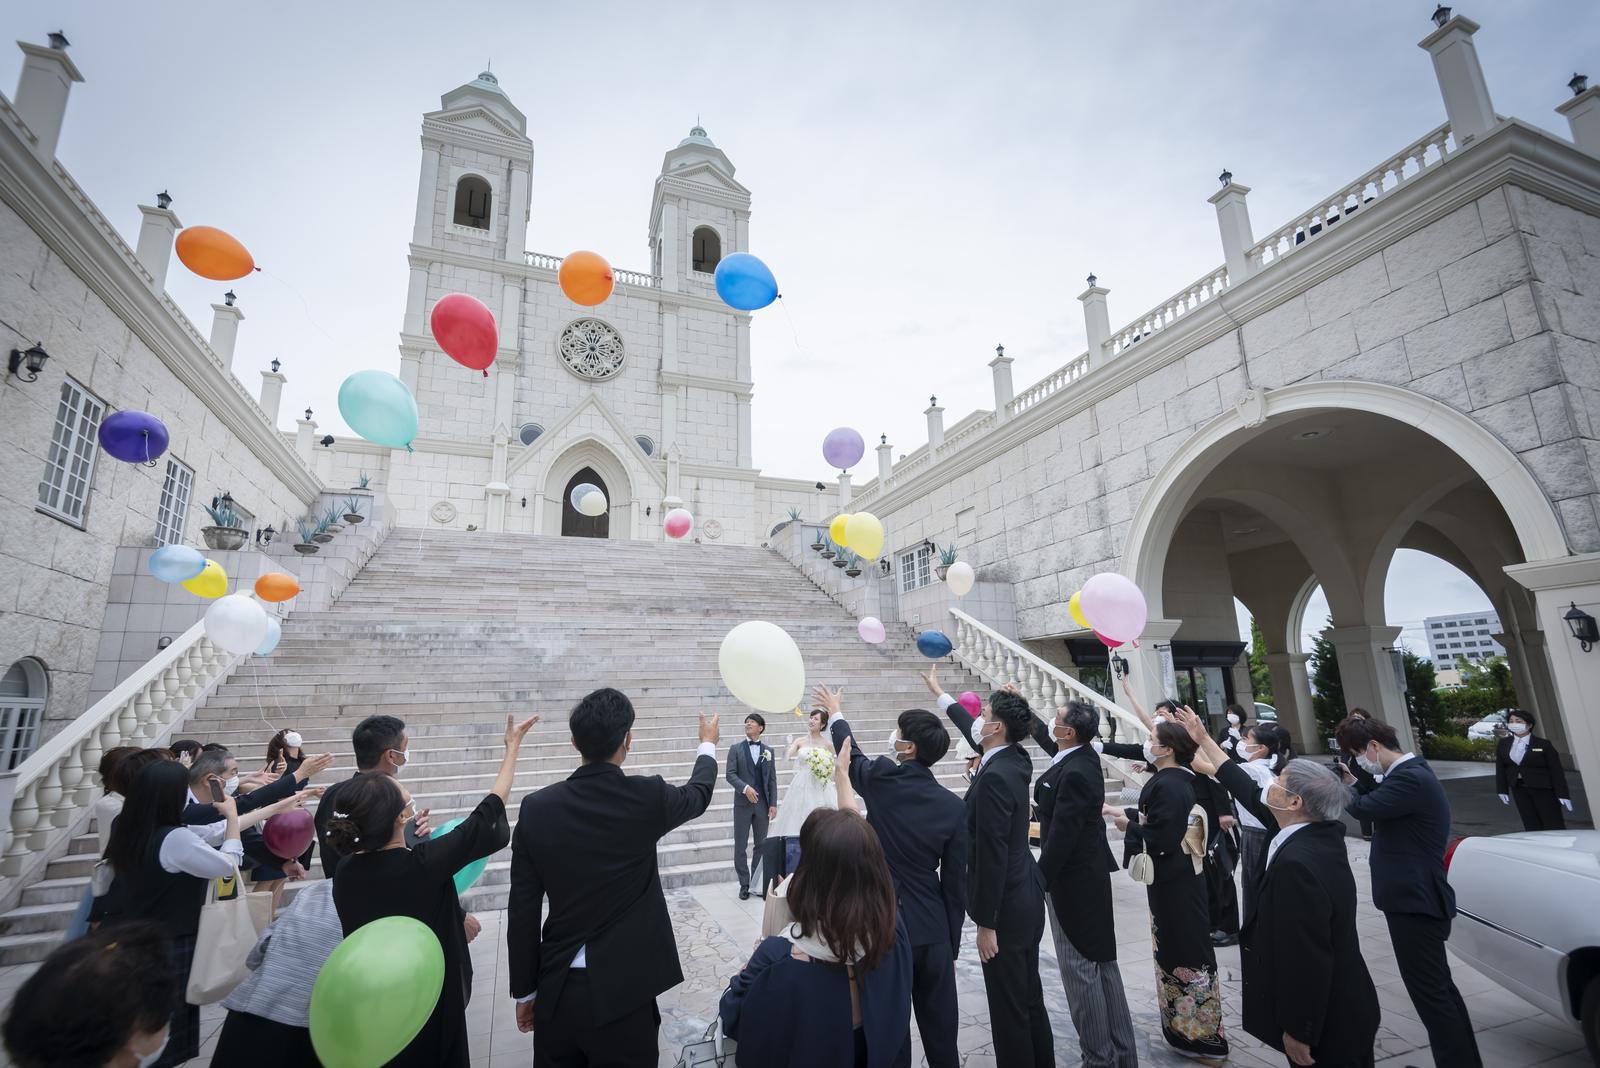 香川県の結婚式場シェルエメール&アイスタイルのバルーンリリース